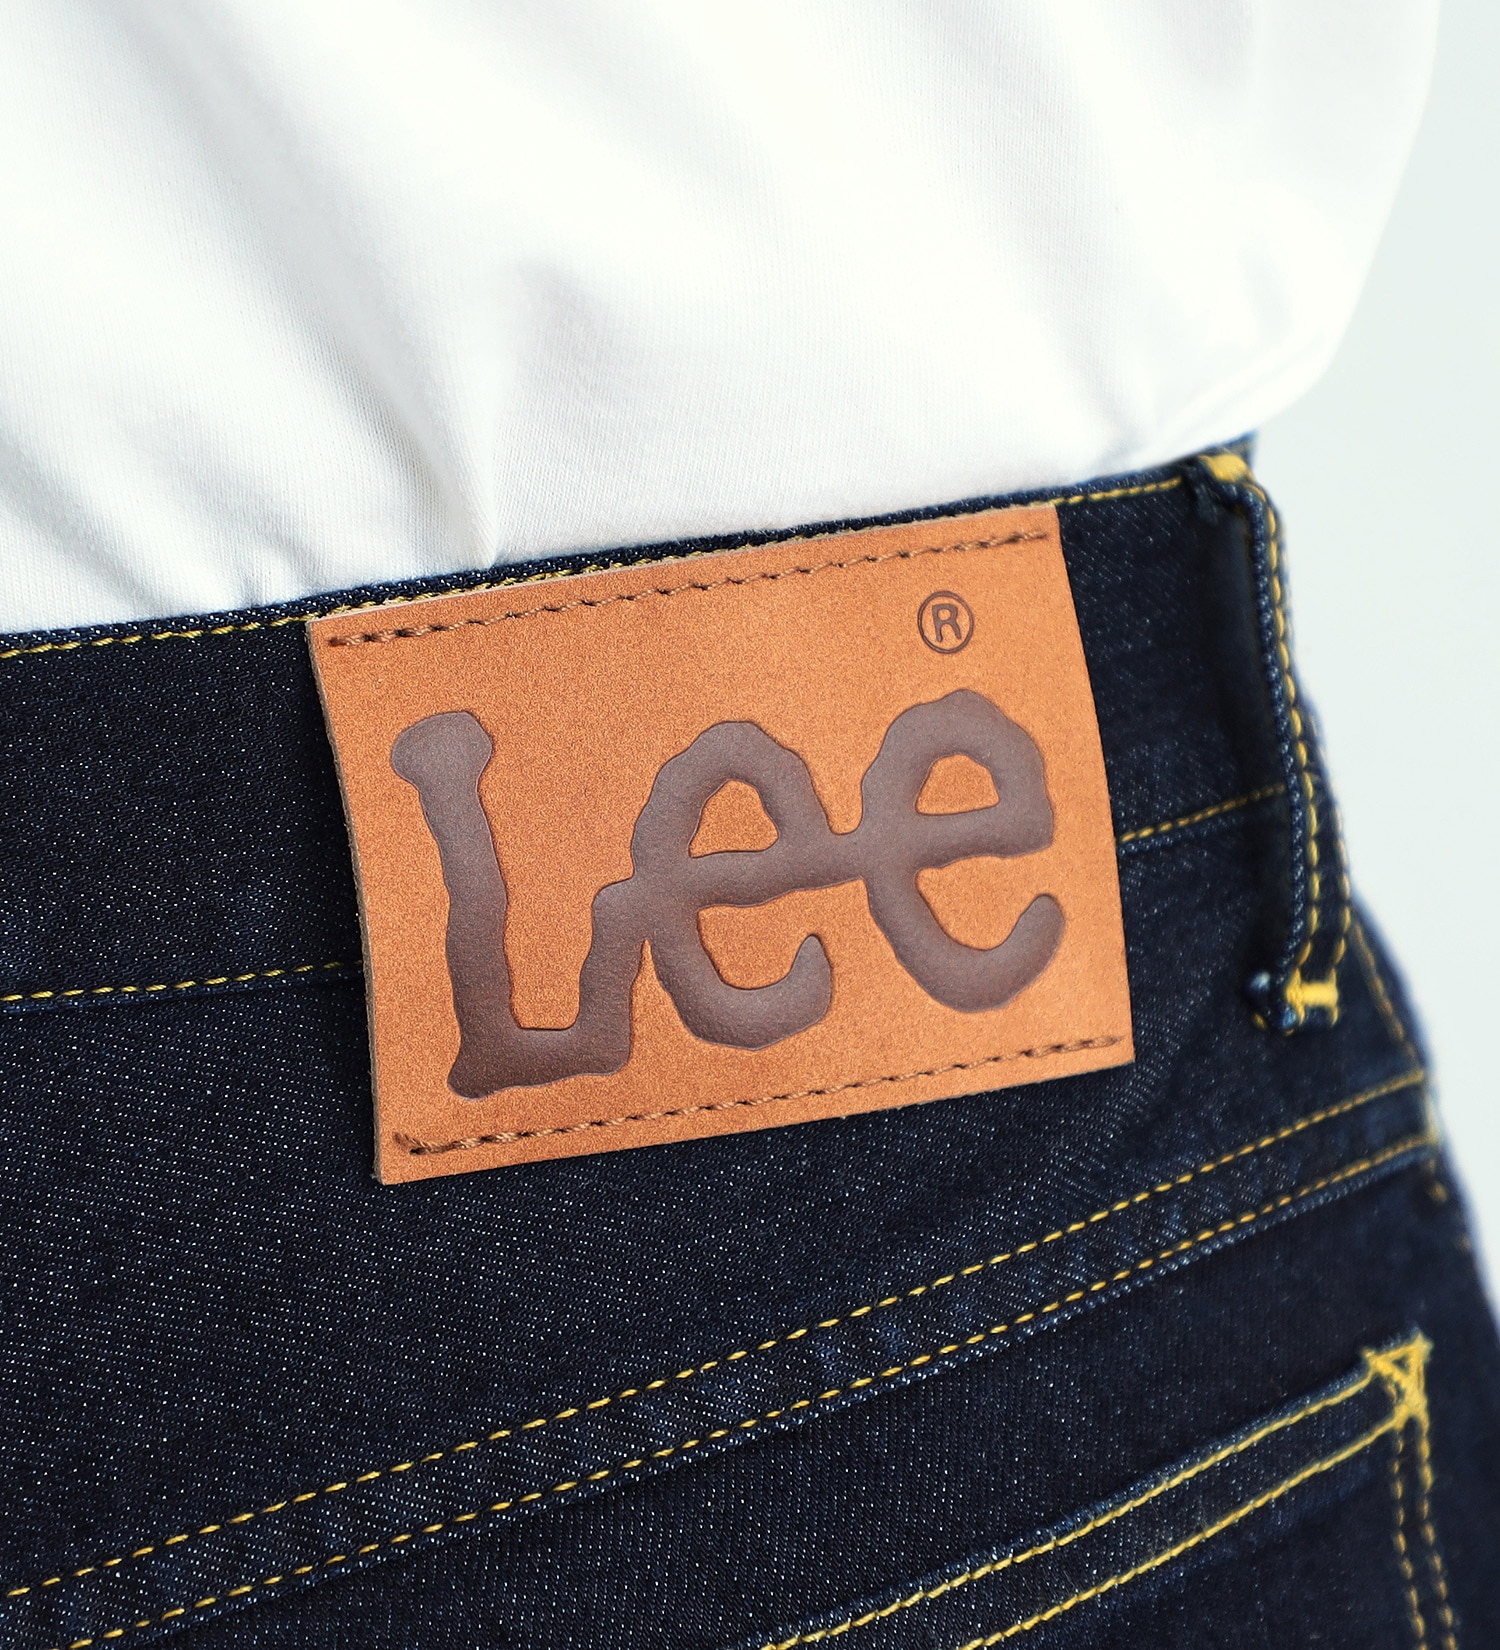 Lee(リー)の【涼・COOL】ドライタッチで涼しく快適AMERICAN STANDARD 201 ストレート|パンツ/デニムパンツ/メンズ|インディゴブルー